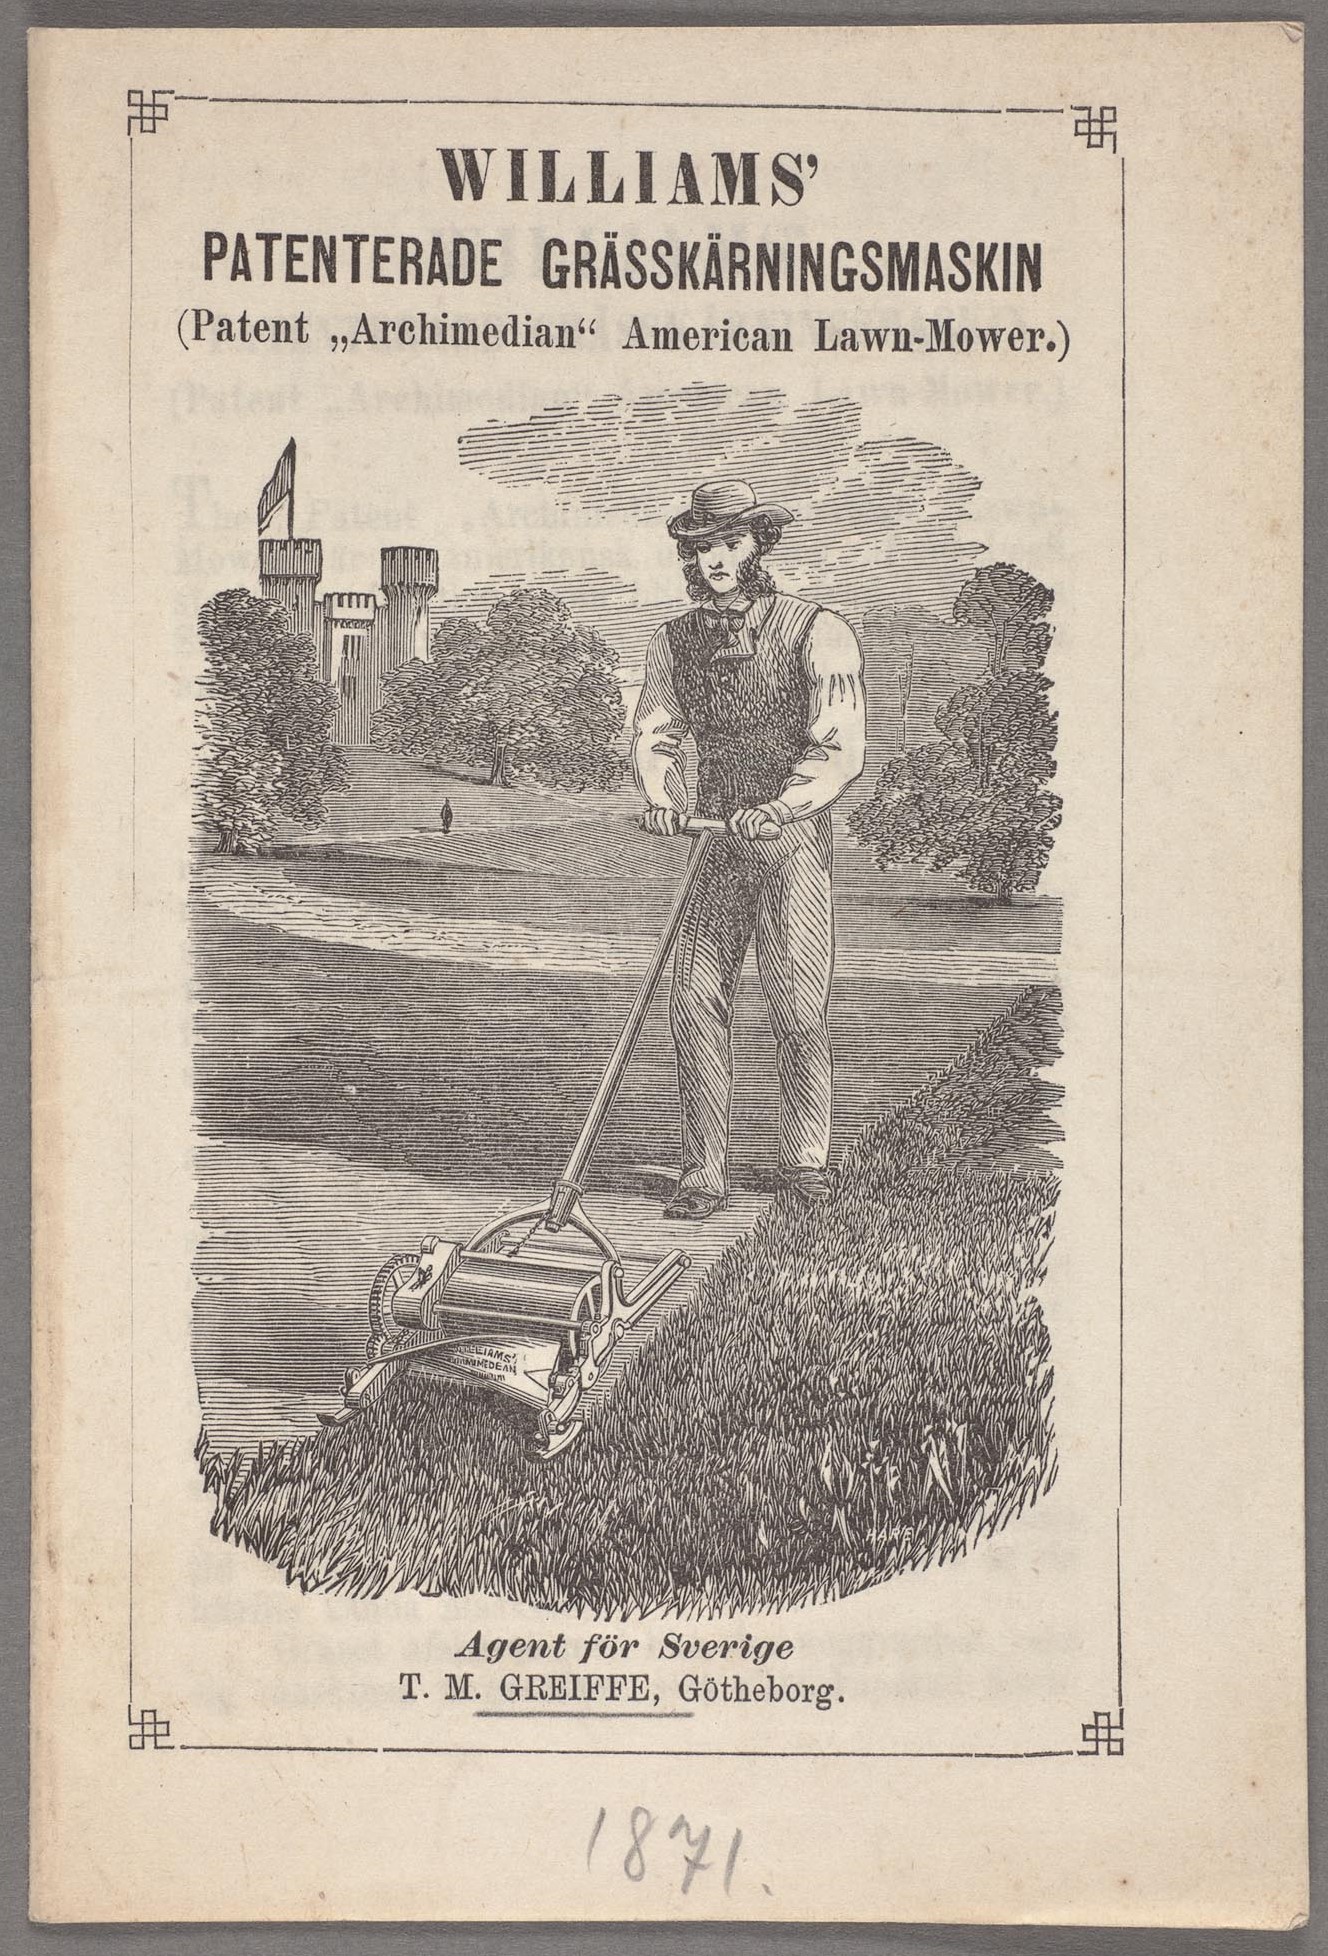 Foto av framsidan på en tryckt reklamfolder med en bild av en man iförd hatt, kravatt och väst som klipper gräs med en ålderdomlig maskin